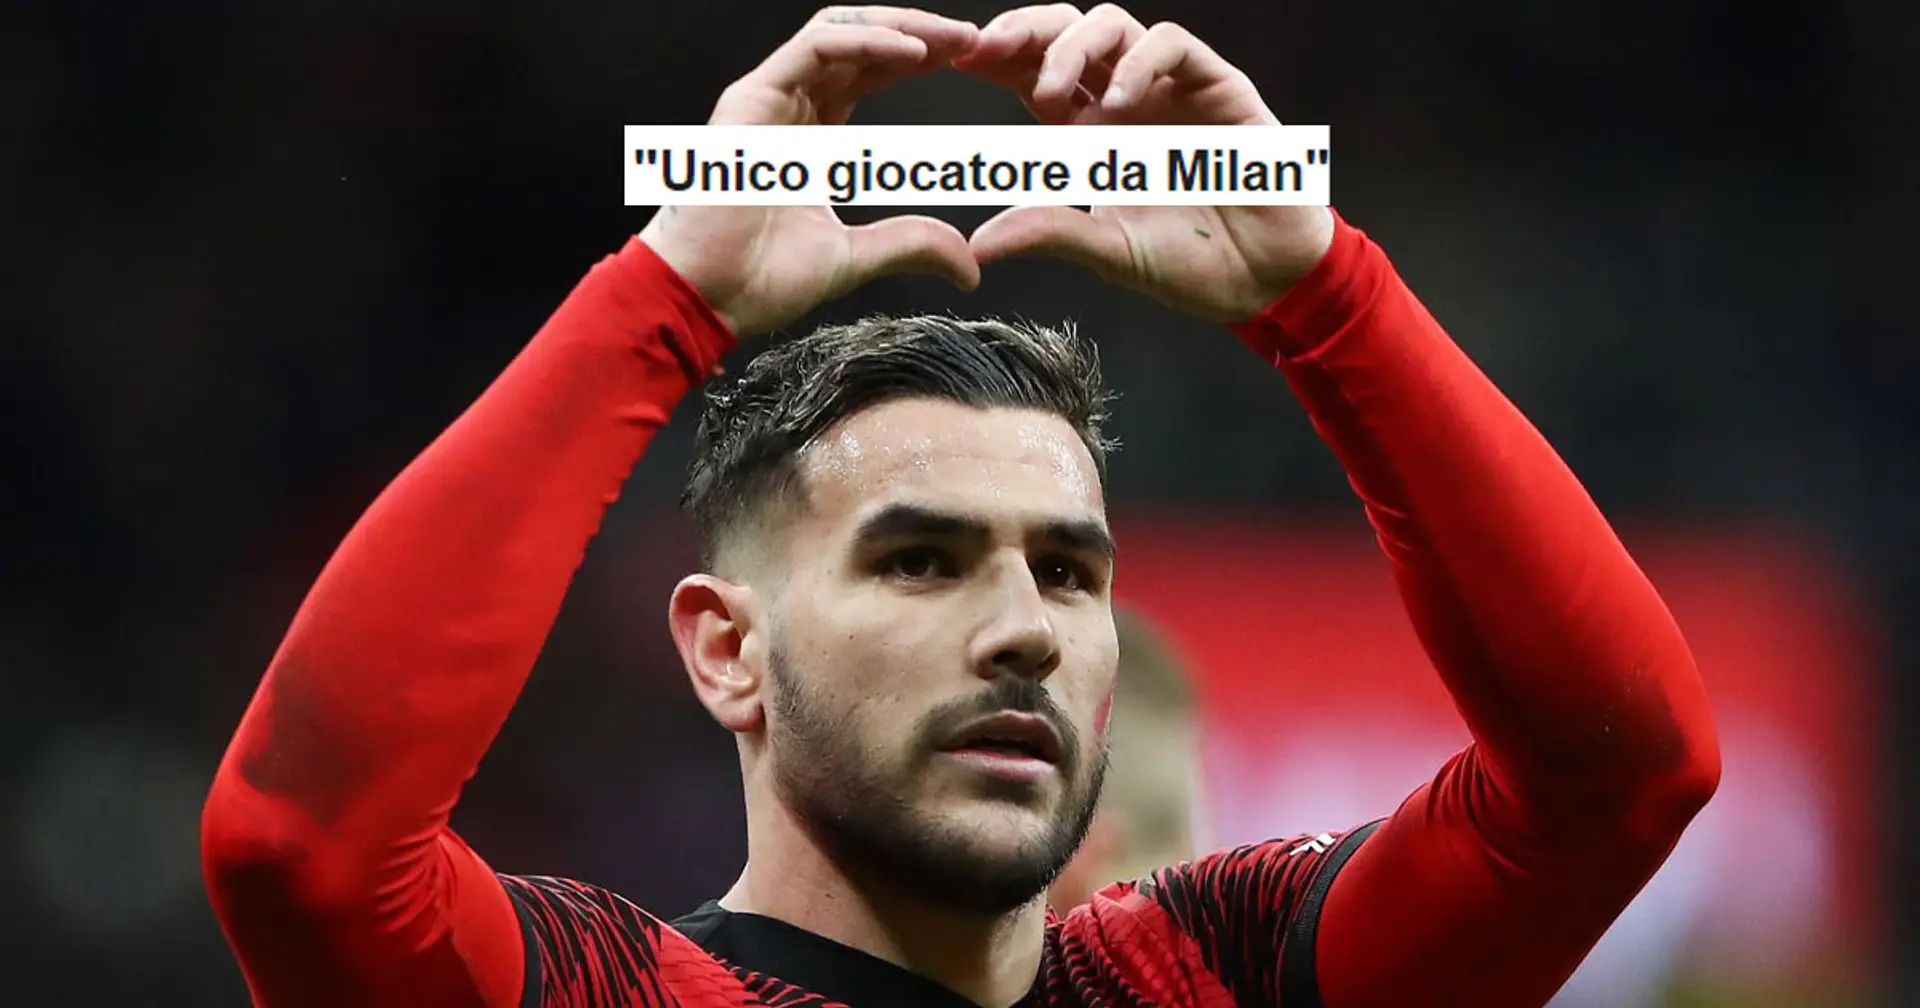 "Unico giocatore da Milan": la reazione dei tifosi sulla posizione della società sull'interesse del Bayern per Theo Hernandez